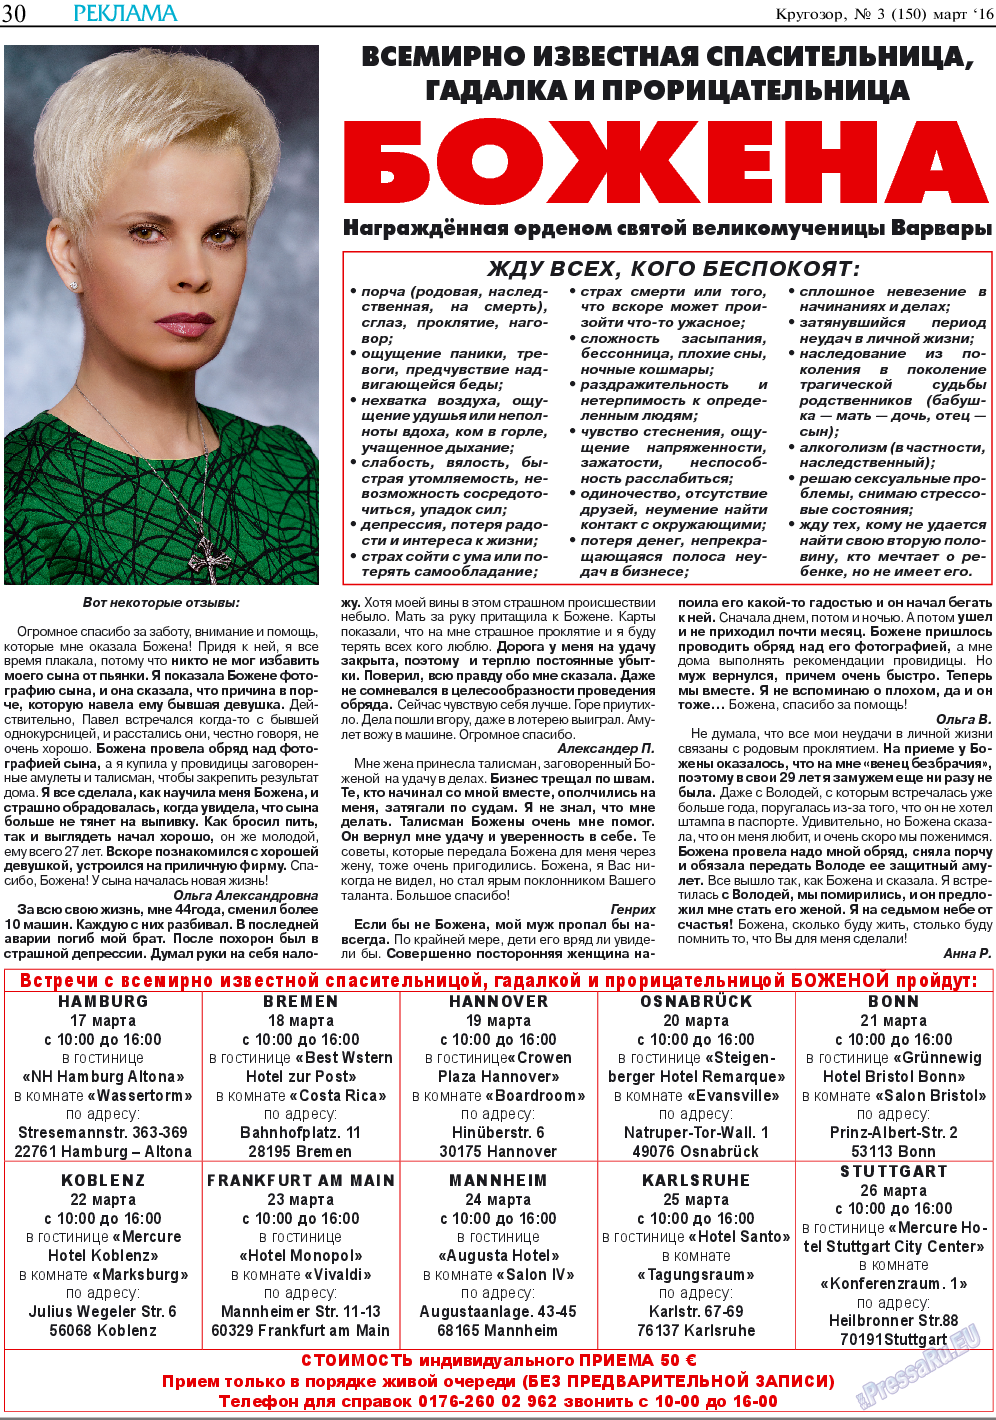 Кругозор (газета). 2016 год, номер 3, стр. 30